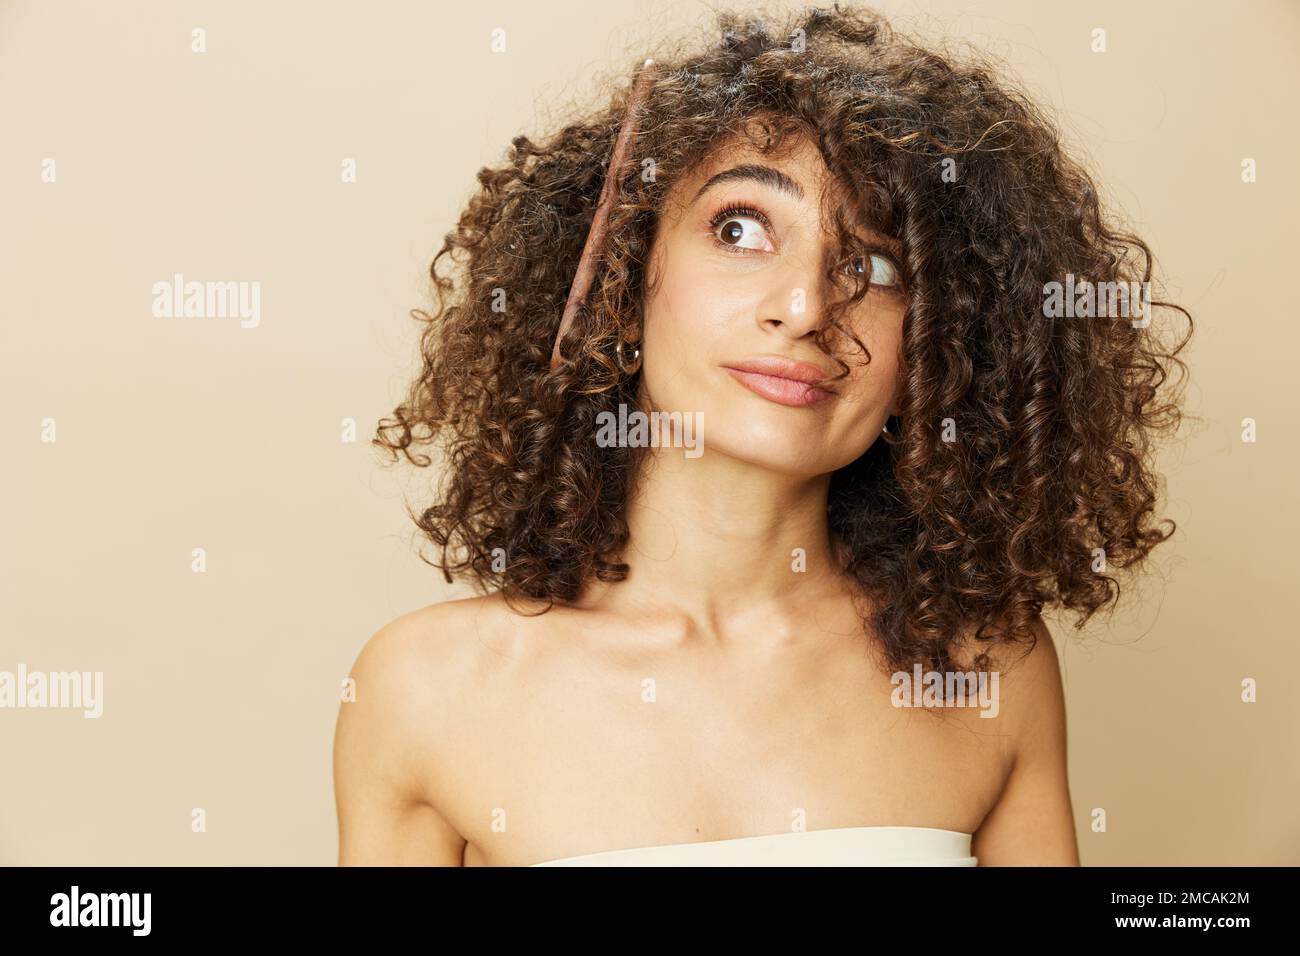 Femme peigne les cheveux bouclés afro avec peigne en bois, produits de coiffage de soins de beauté maison, perte de cheveux après Covid-19, sourire sur fond beige Banque D'Images